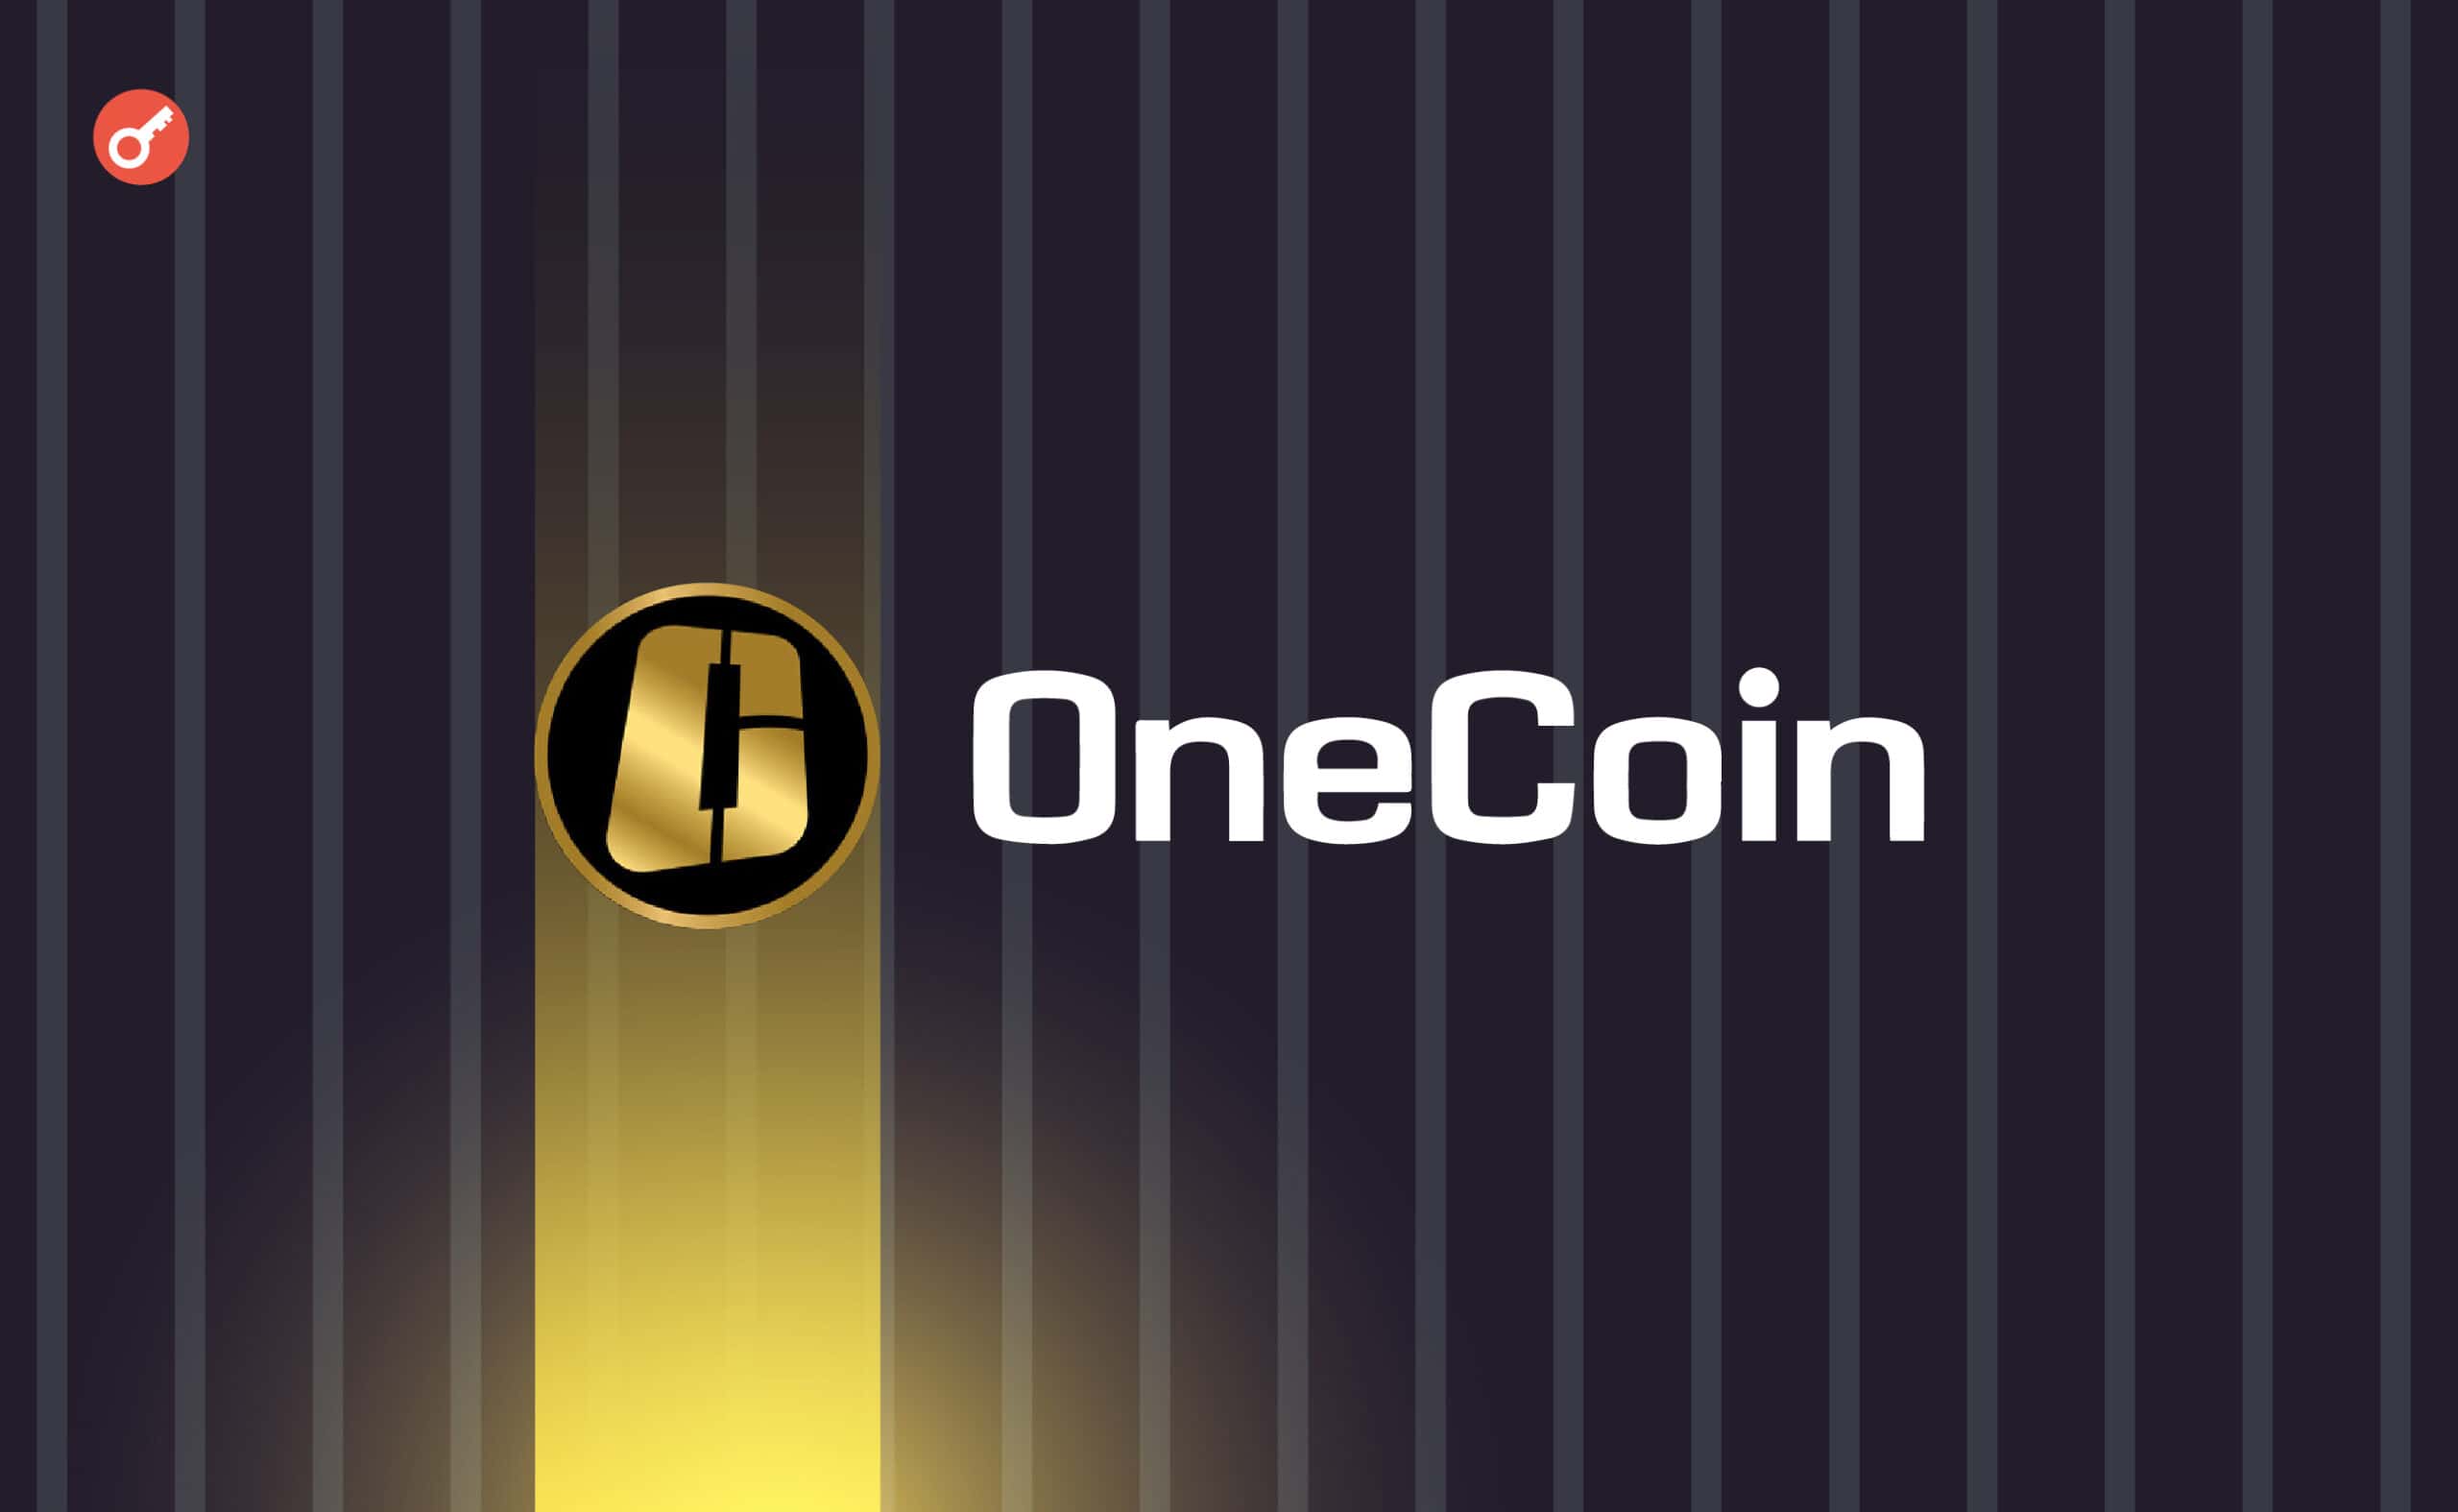 Экс-руководительница OneCoin признала вину в мошенничестве и отмывании $110 млн. Заглавный коллаж новости.